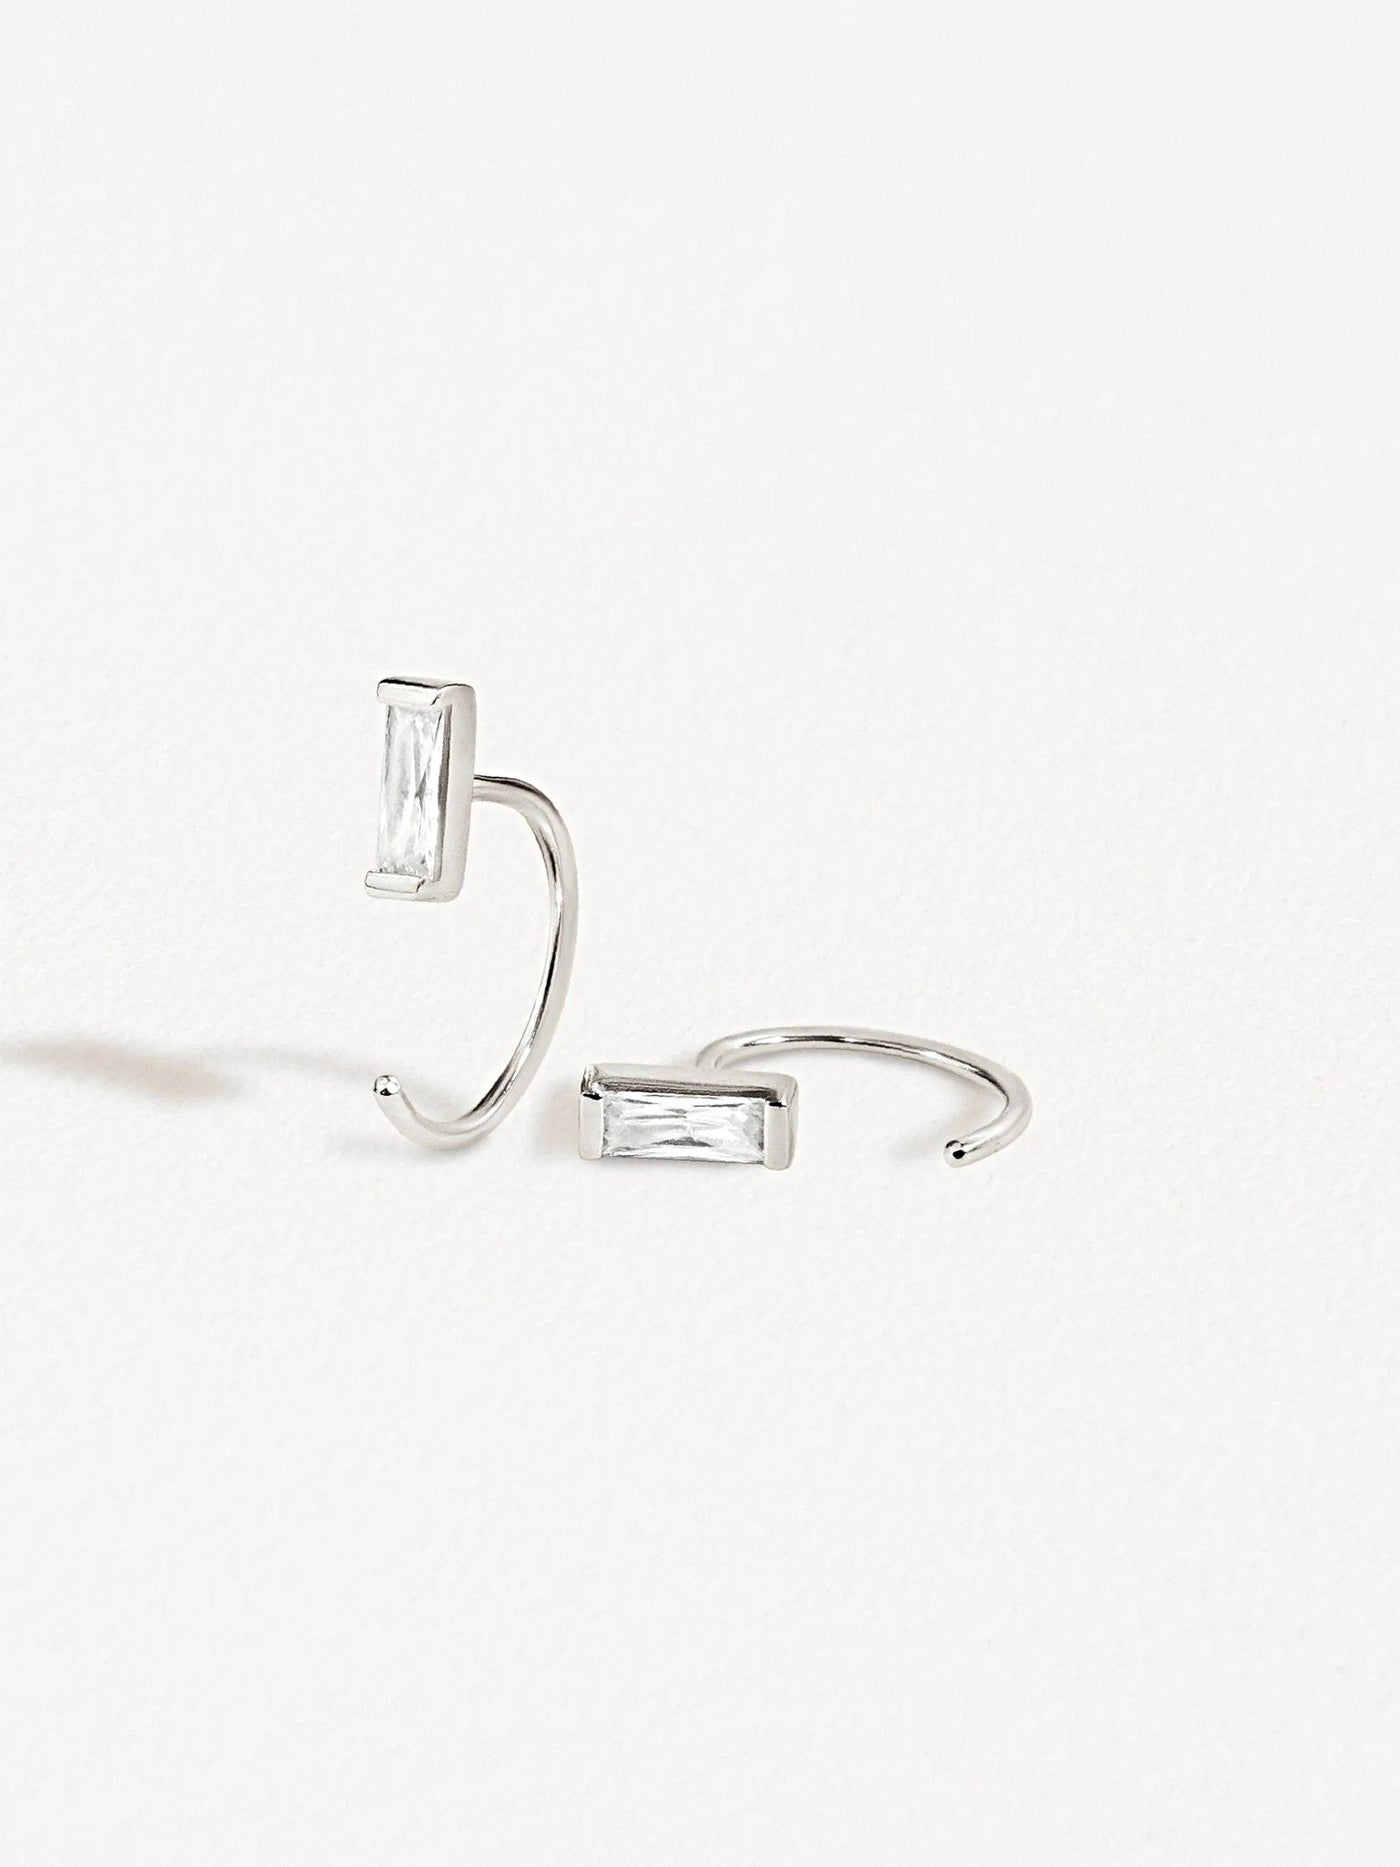 Iva Huggie Hoop Earrings - 925 Sterling SilverBackUpItemsBridesmaid GiftLunai Jewelry